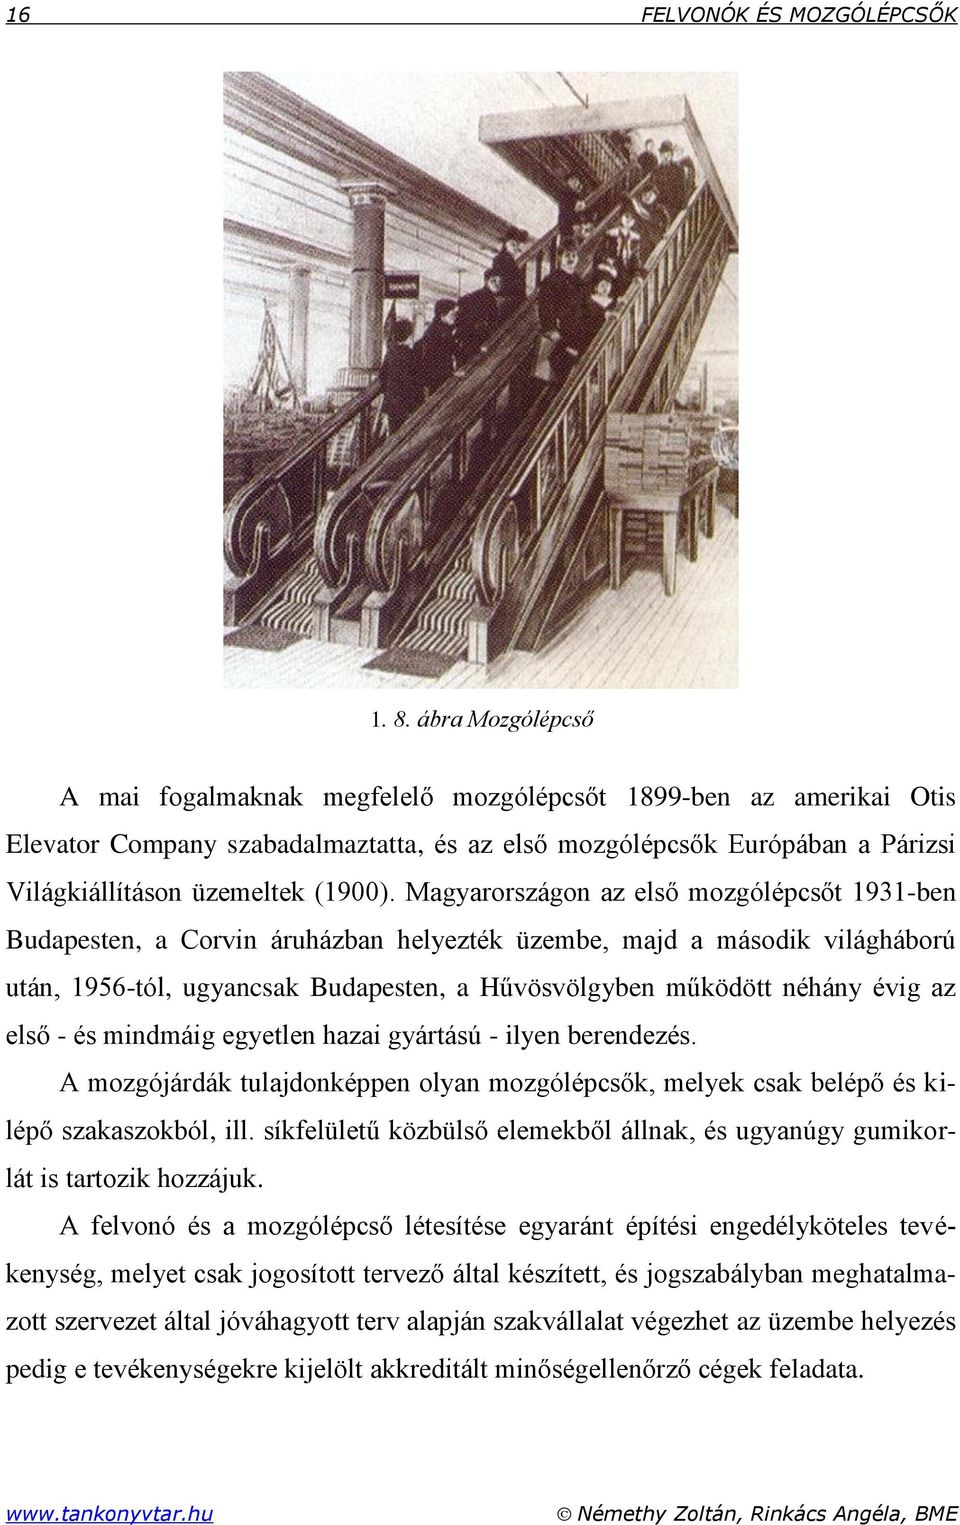 Magyarországon az első mozgólépcsőt 1931-ben Budapesten, a Corvin áruházban helyezték üzembe, majd a második világháború után, 1956-tól, ugyancsak Budapesten, a Hűvösvölgyben működött néhány évig az